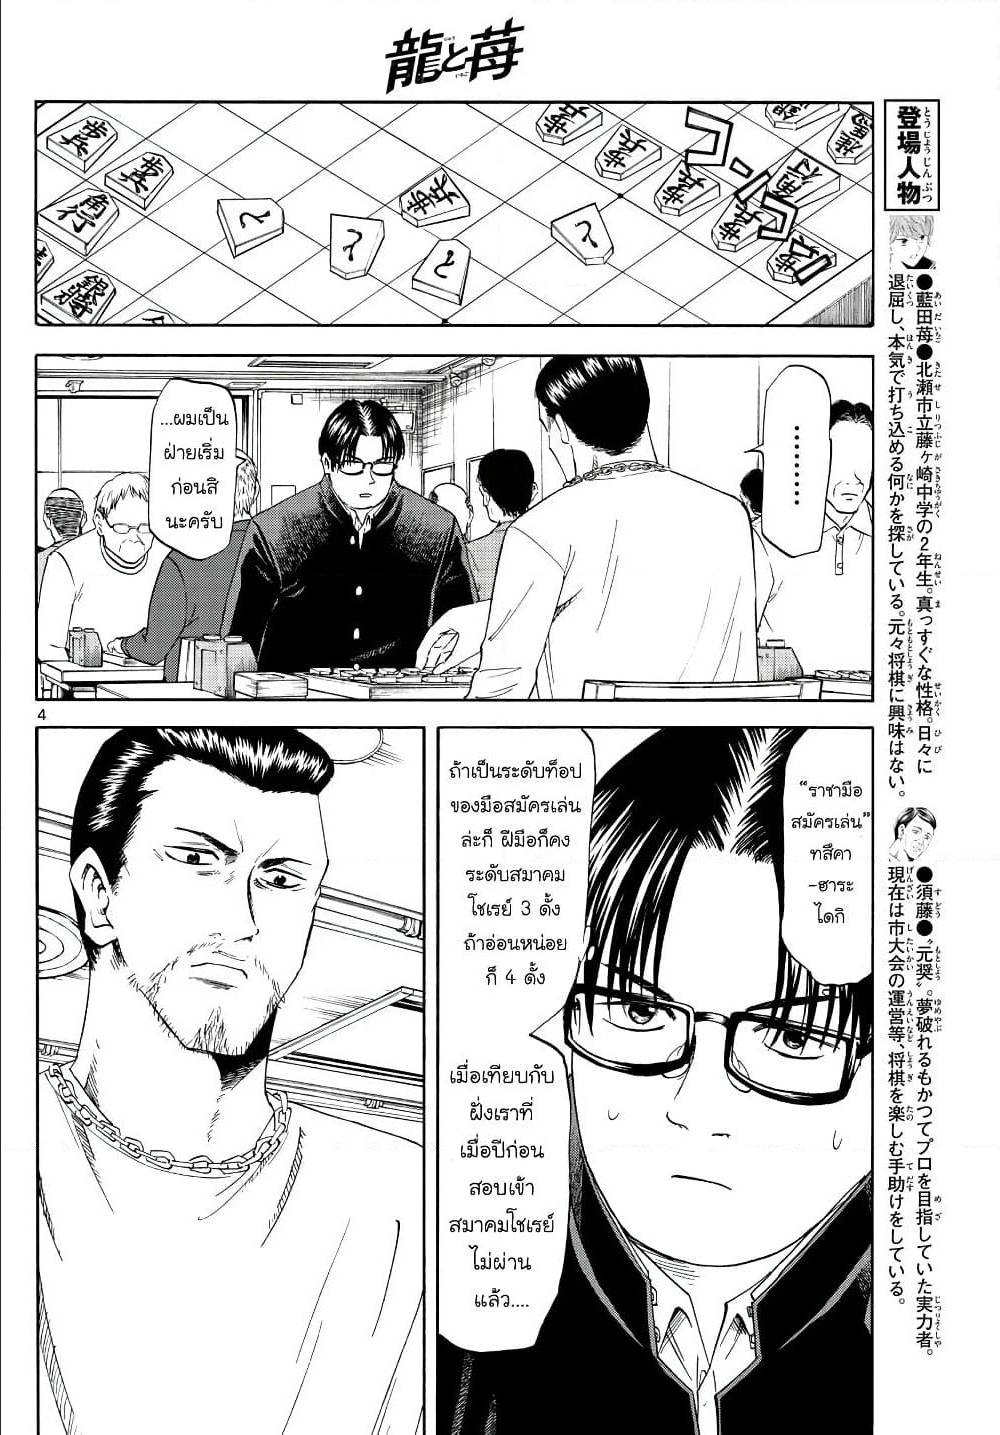 Ryuu to Ichigo 14 (4)